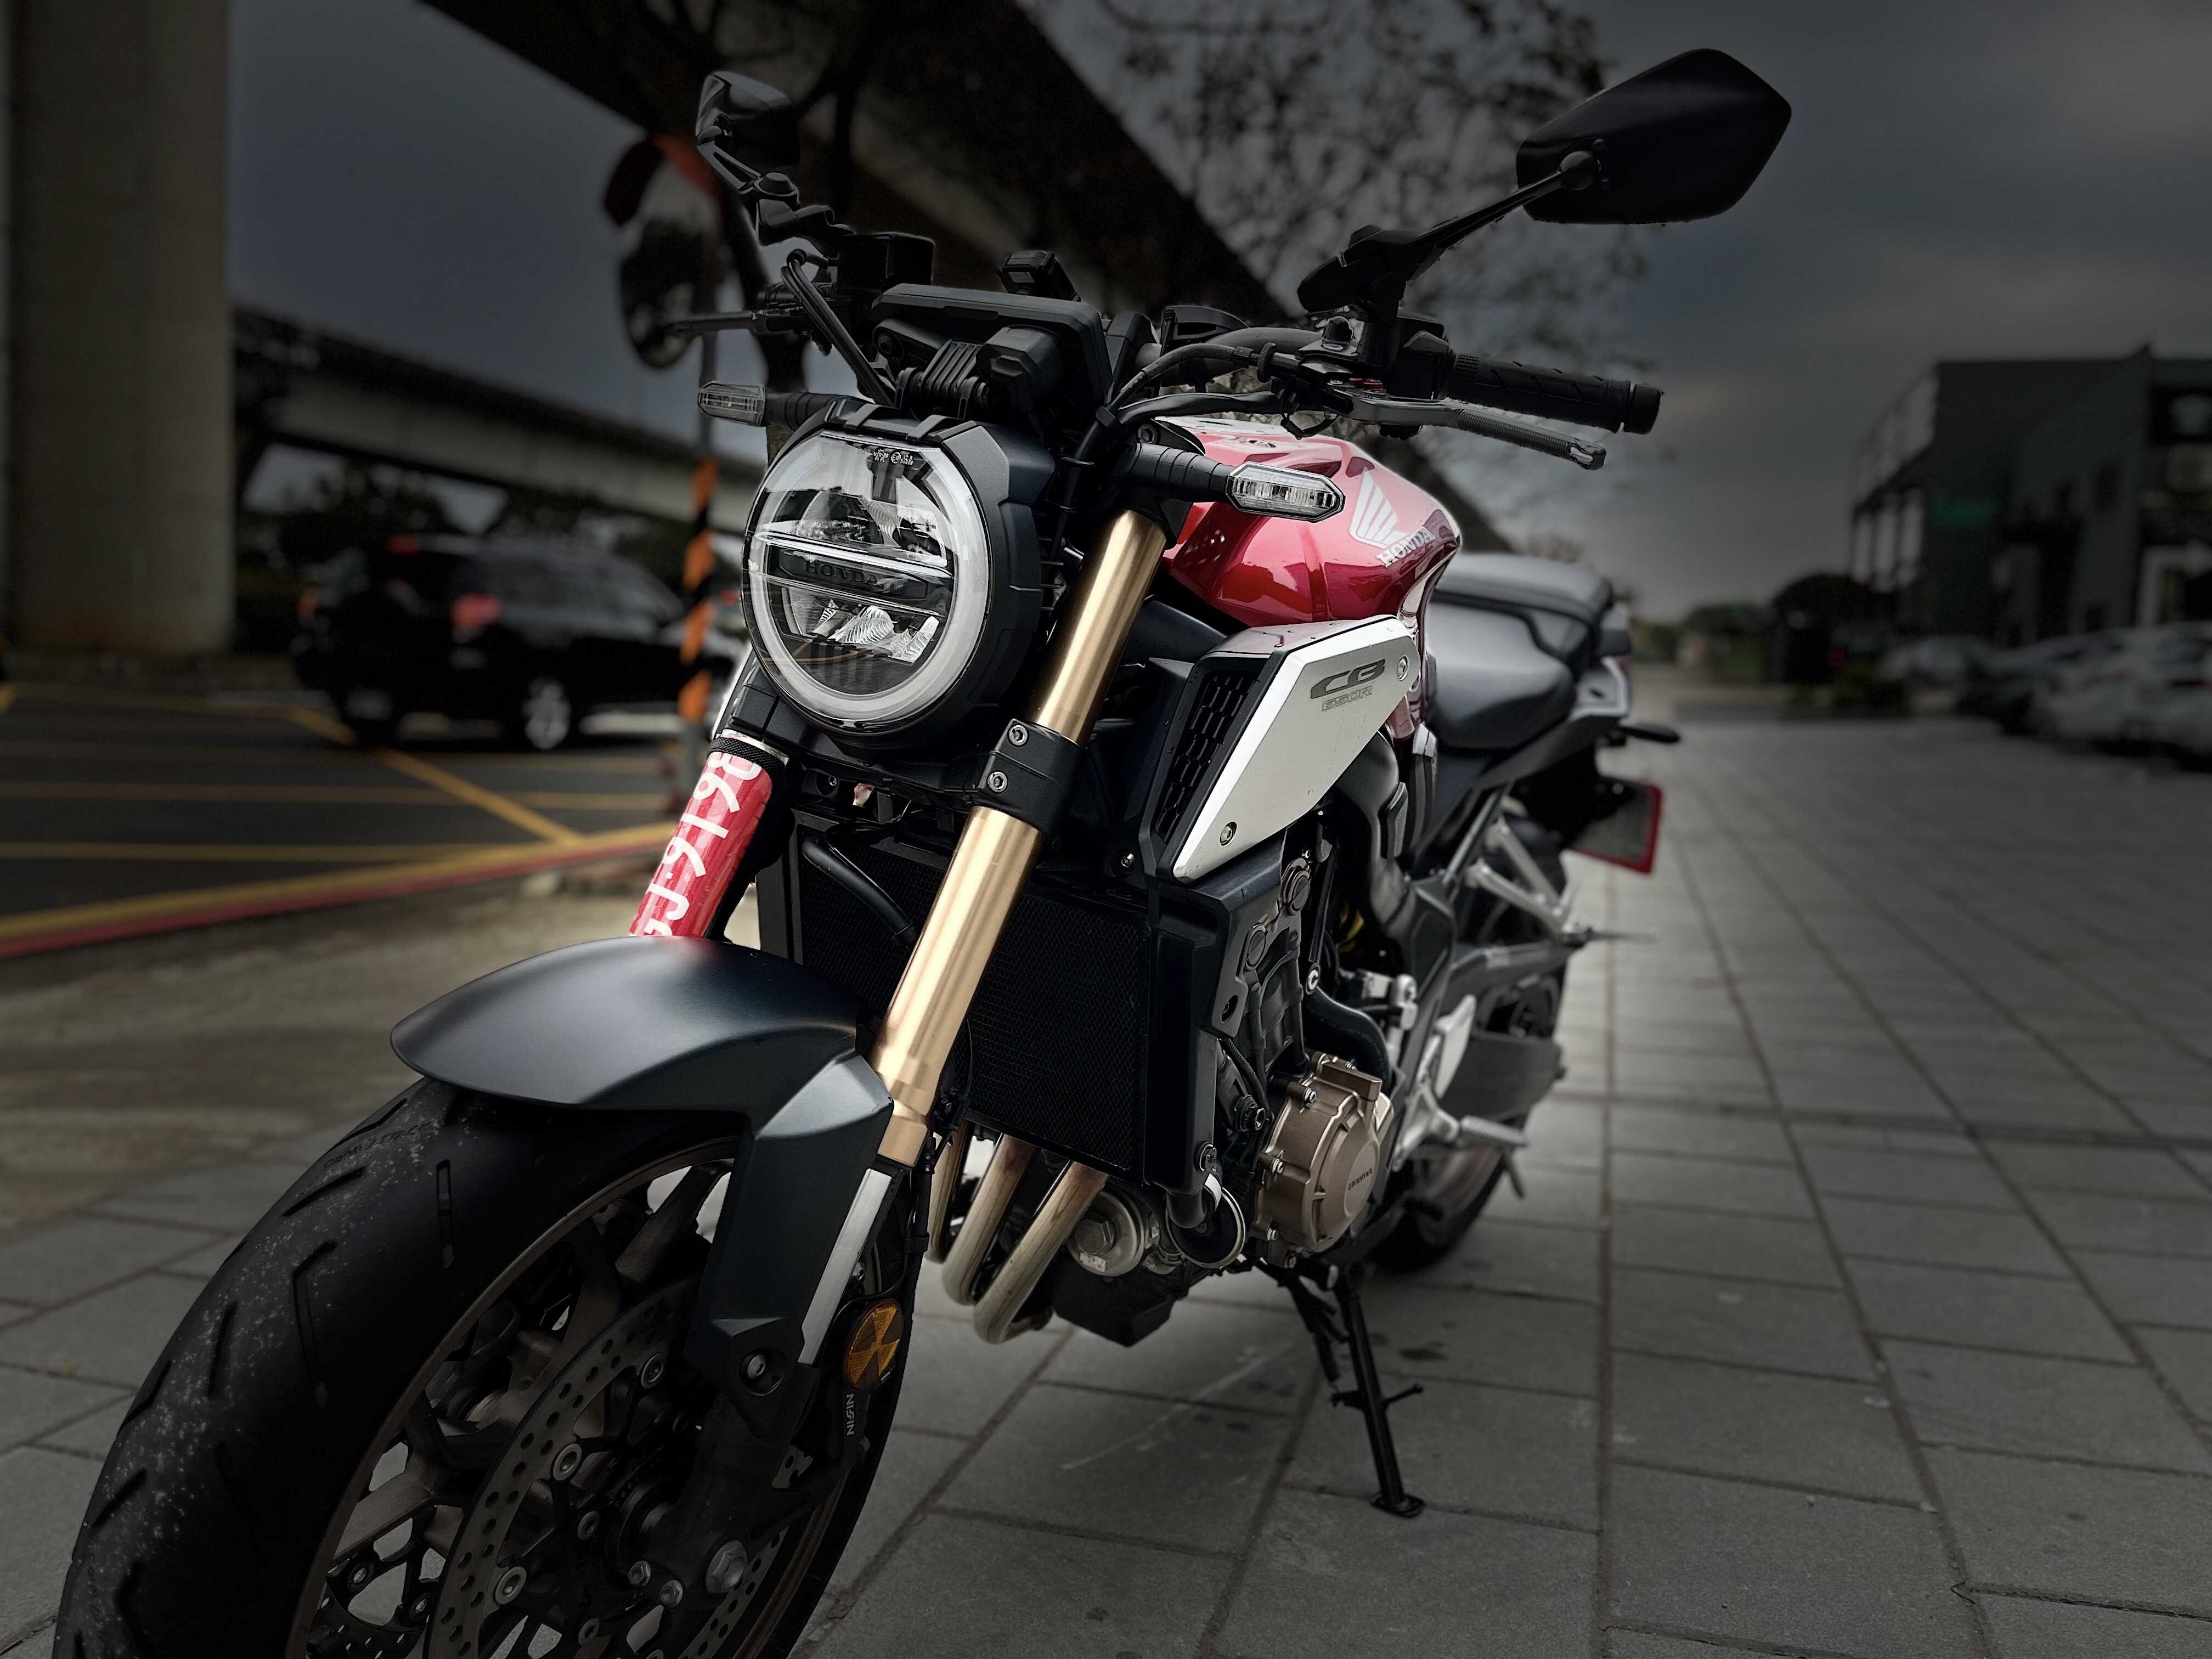 【小資族二手重機買賣】HONDA CB650R - 「Webike-摩托車市」 巴西火舌 Ridea拉桿 里程保證 小資族二手重機買賣